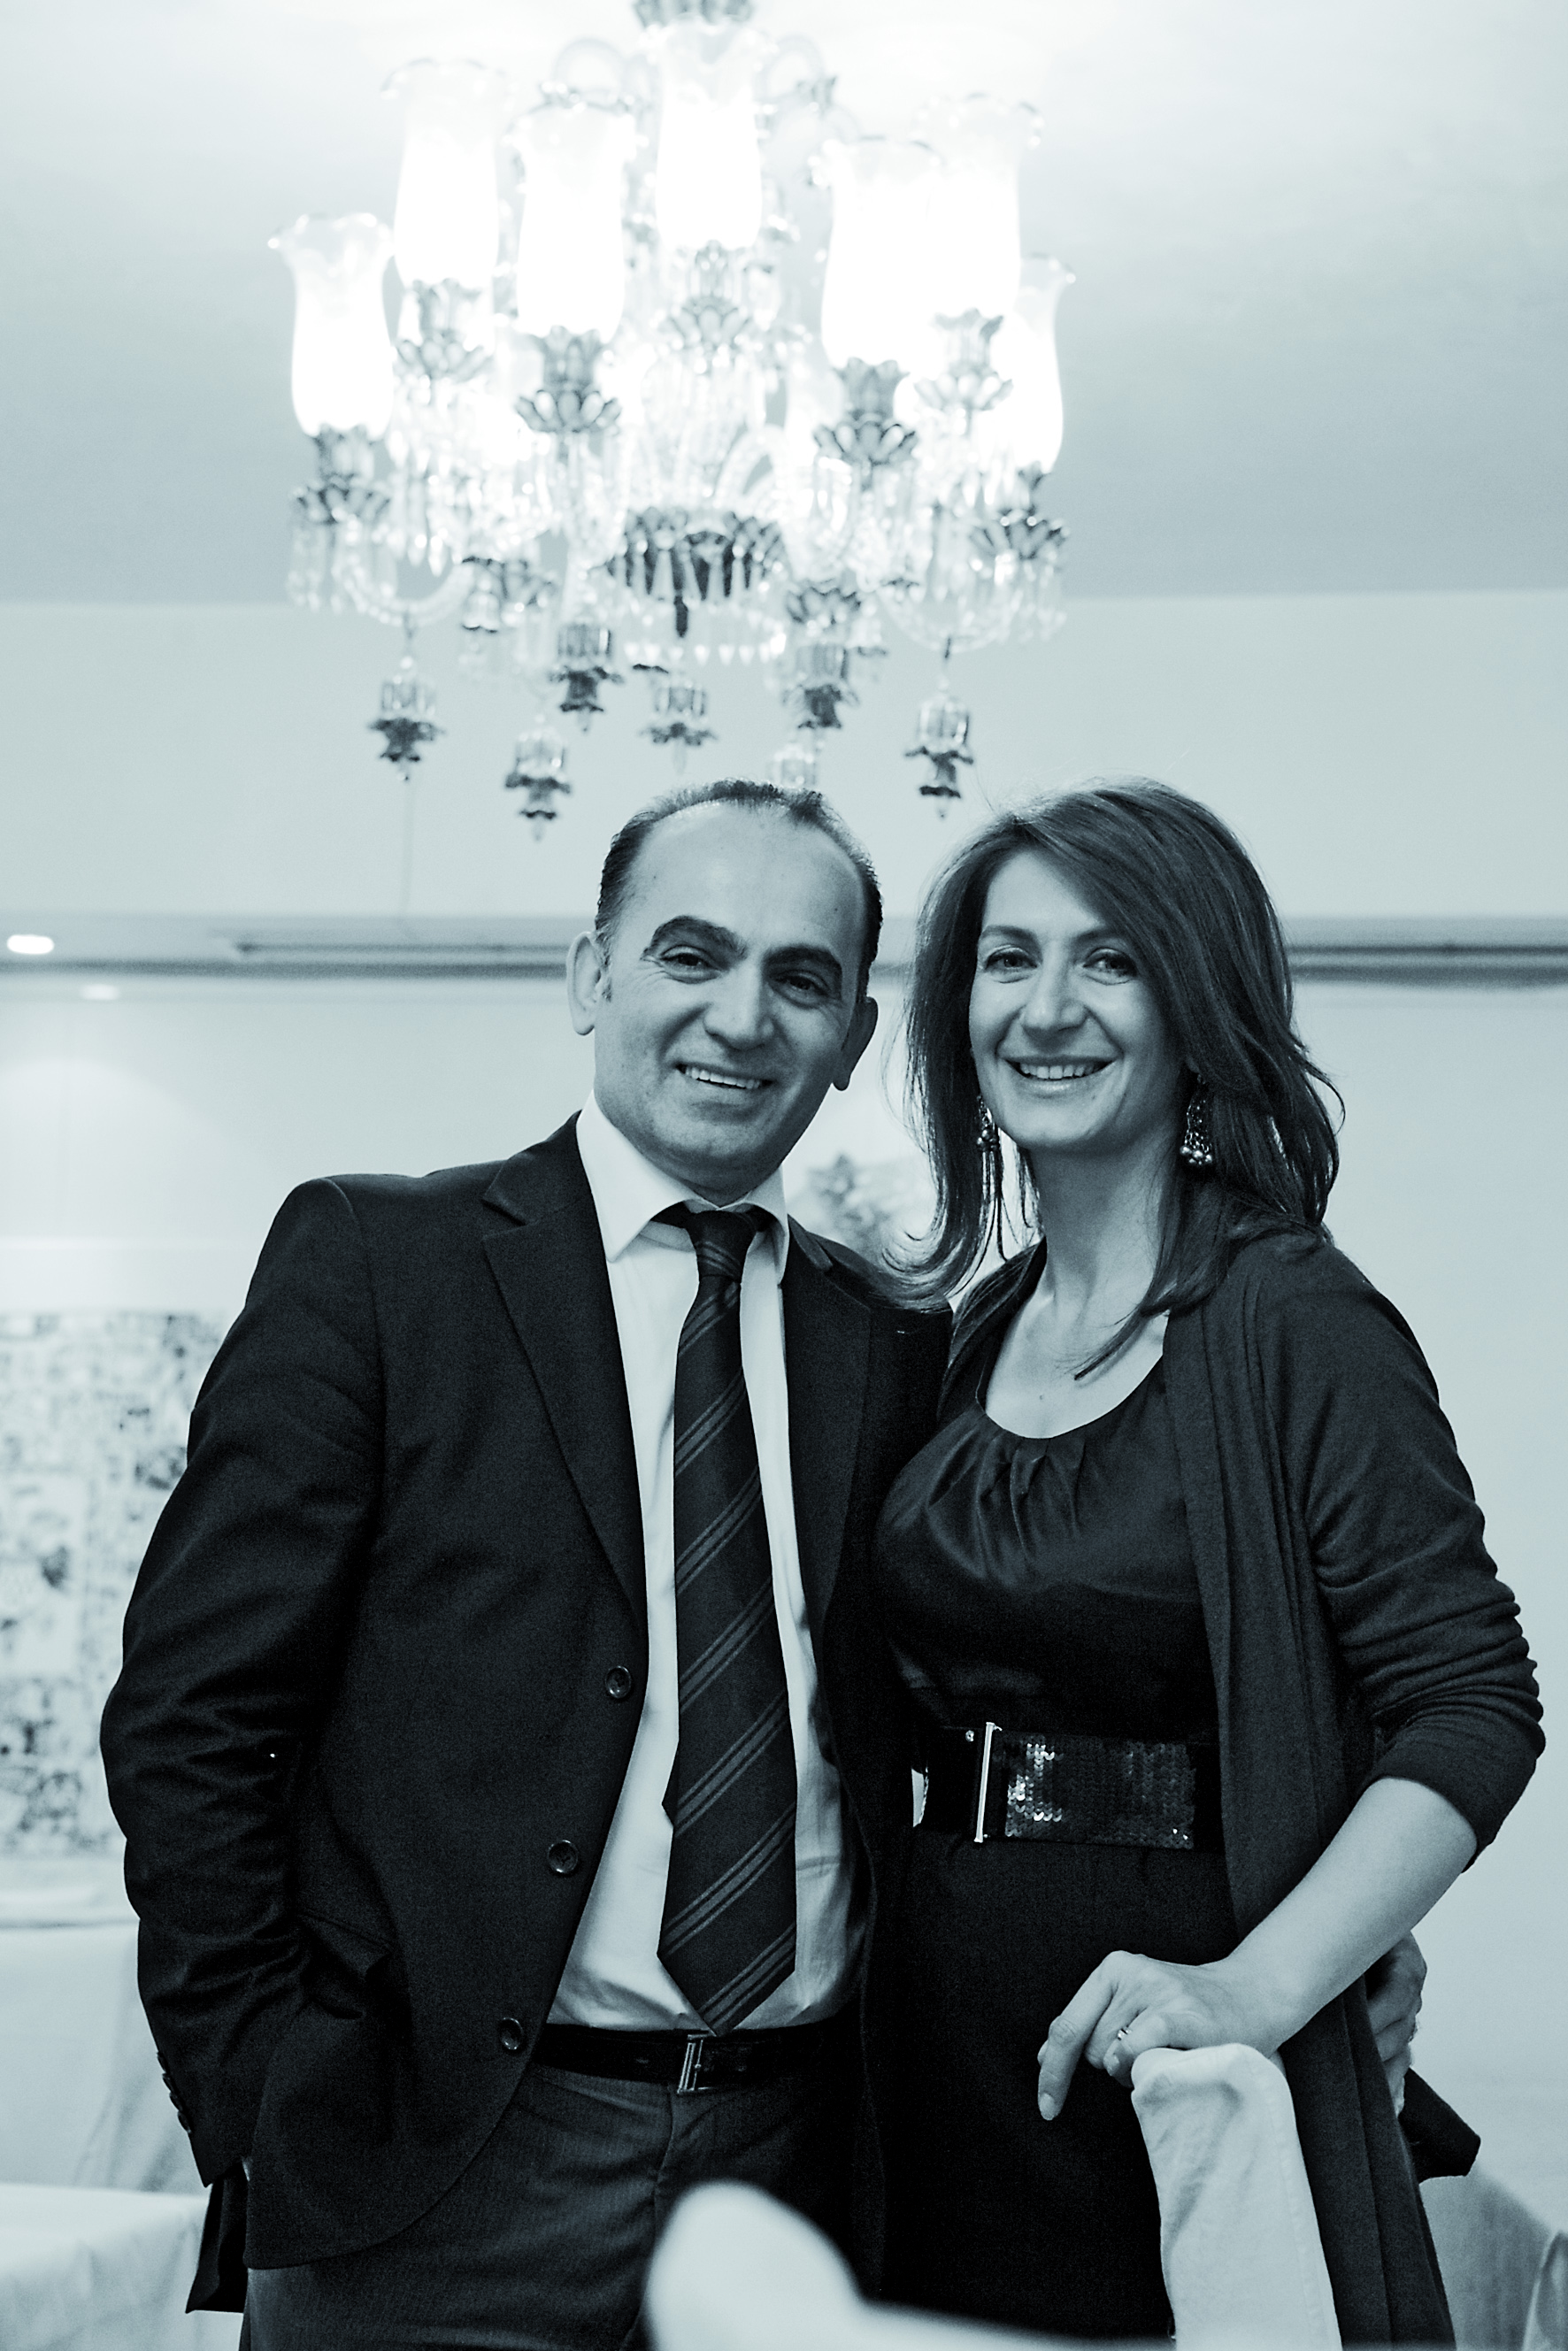 Ali Balaban, Besitzer des Kölner Restaurant "Bosporus" - Ausländisches Restaurant des Jahres 2013